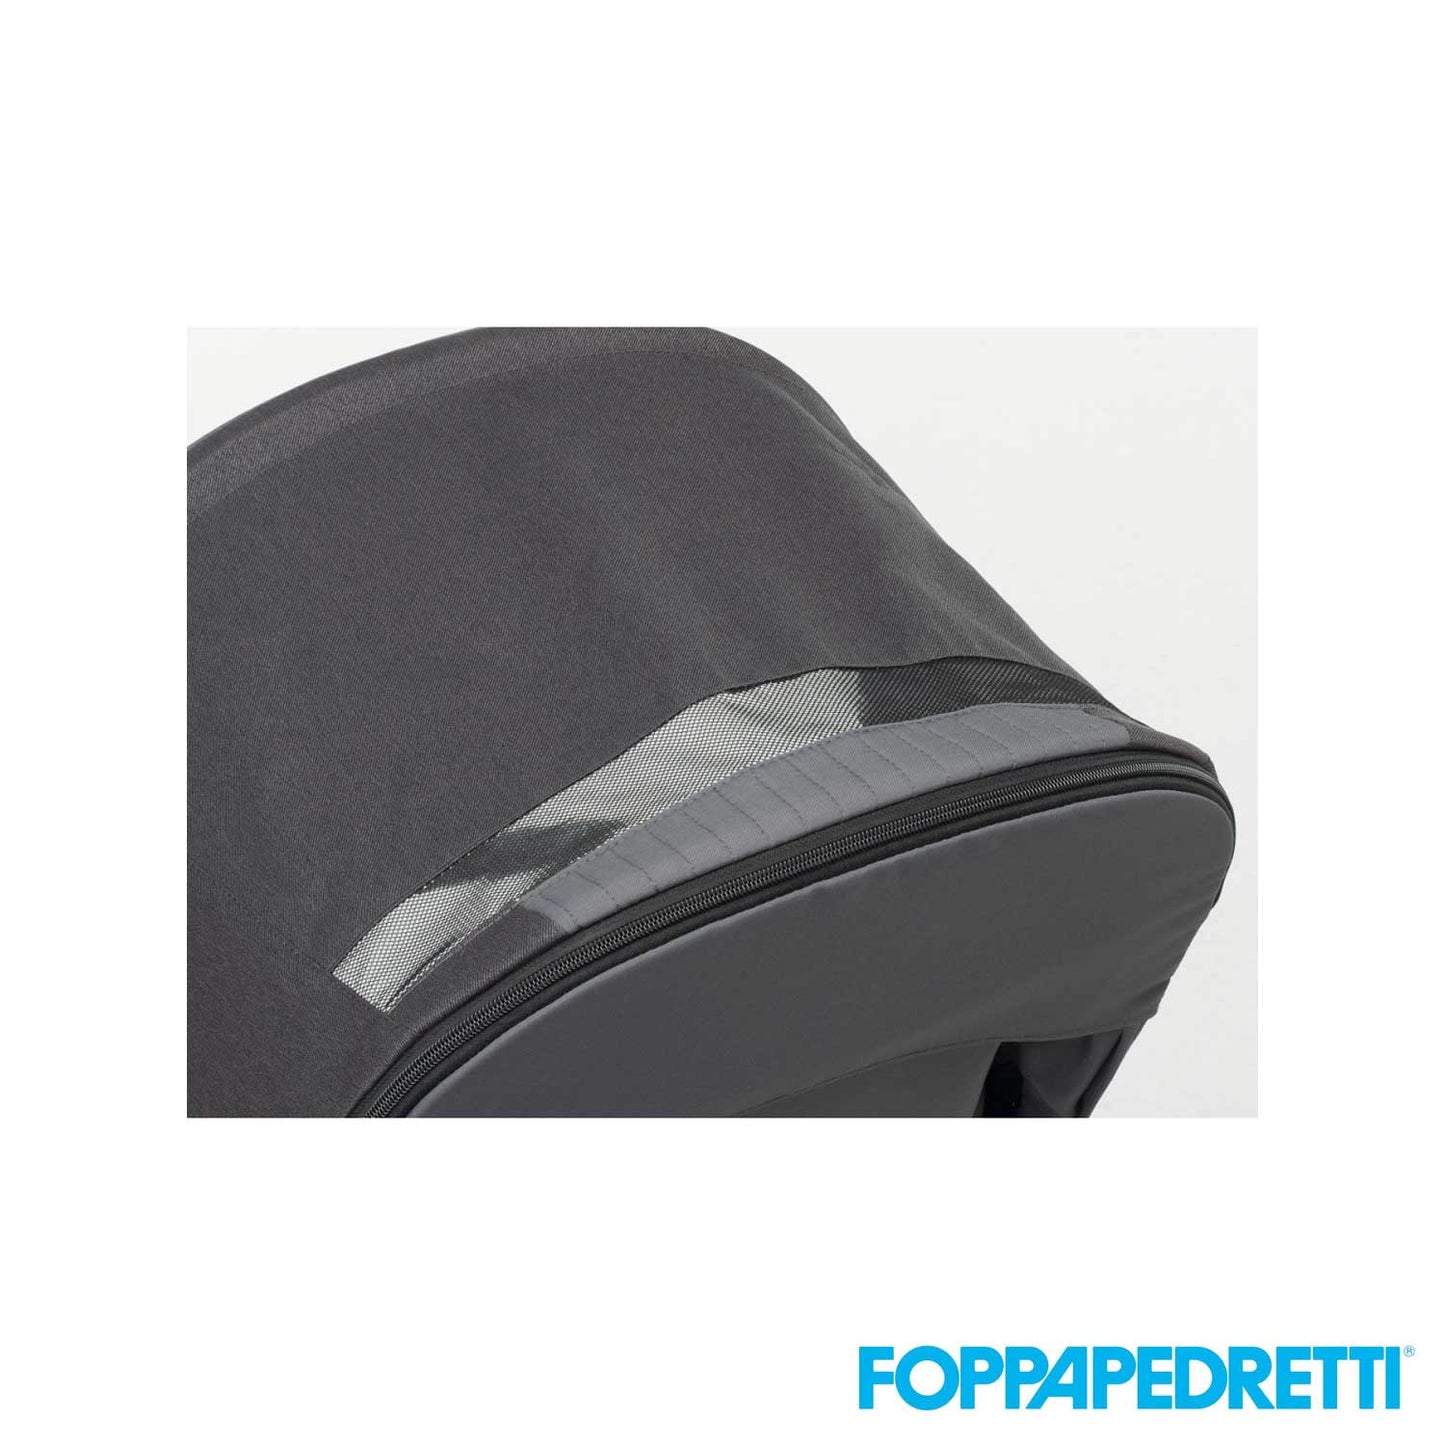 Foppapedretti - Trio Divo + Borsa Comfort